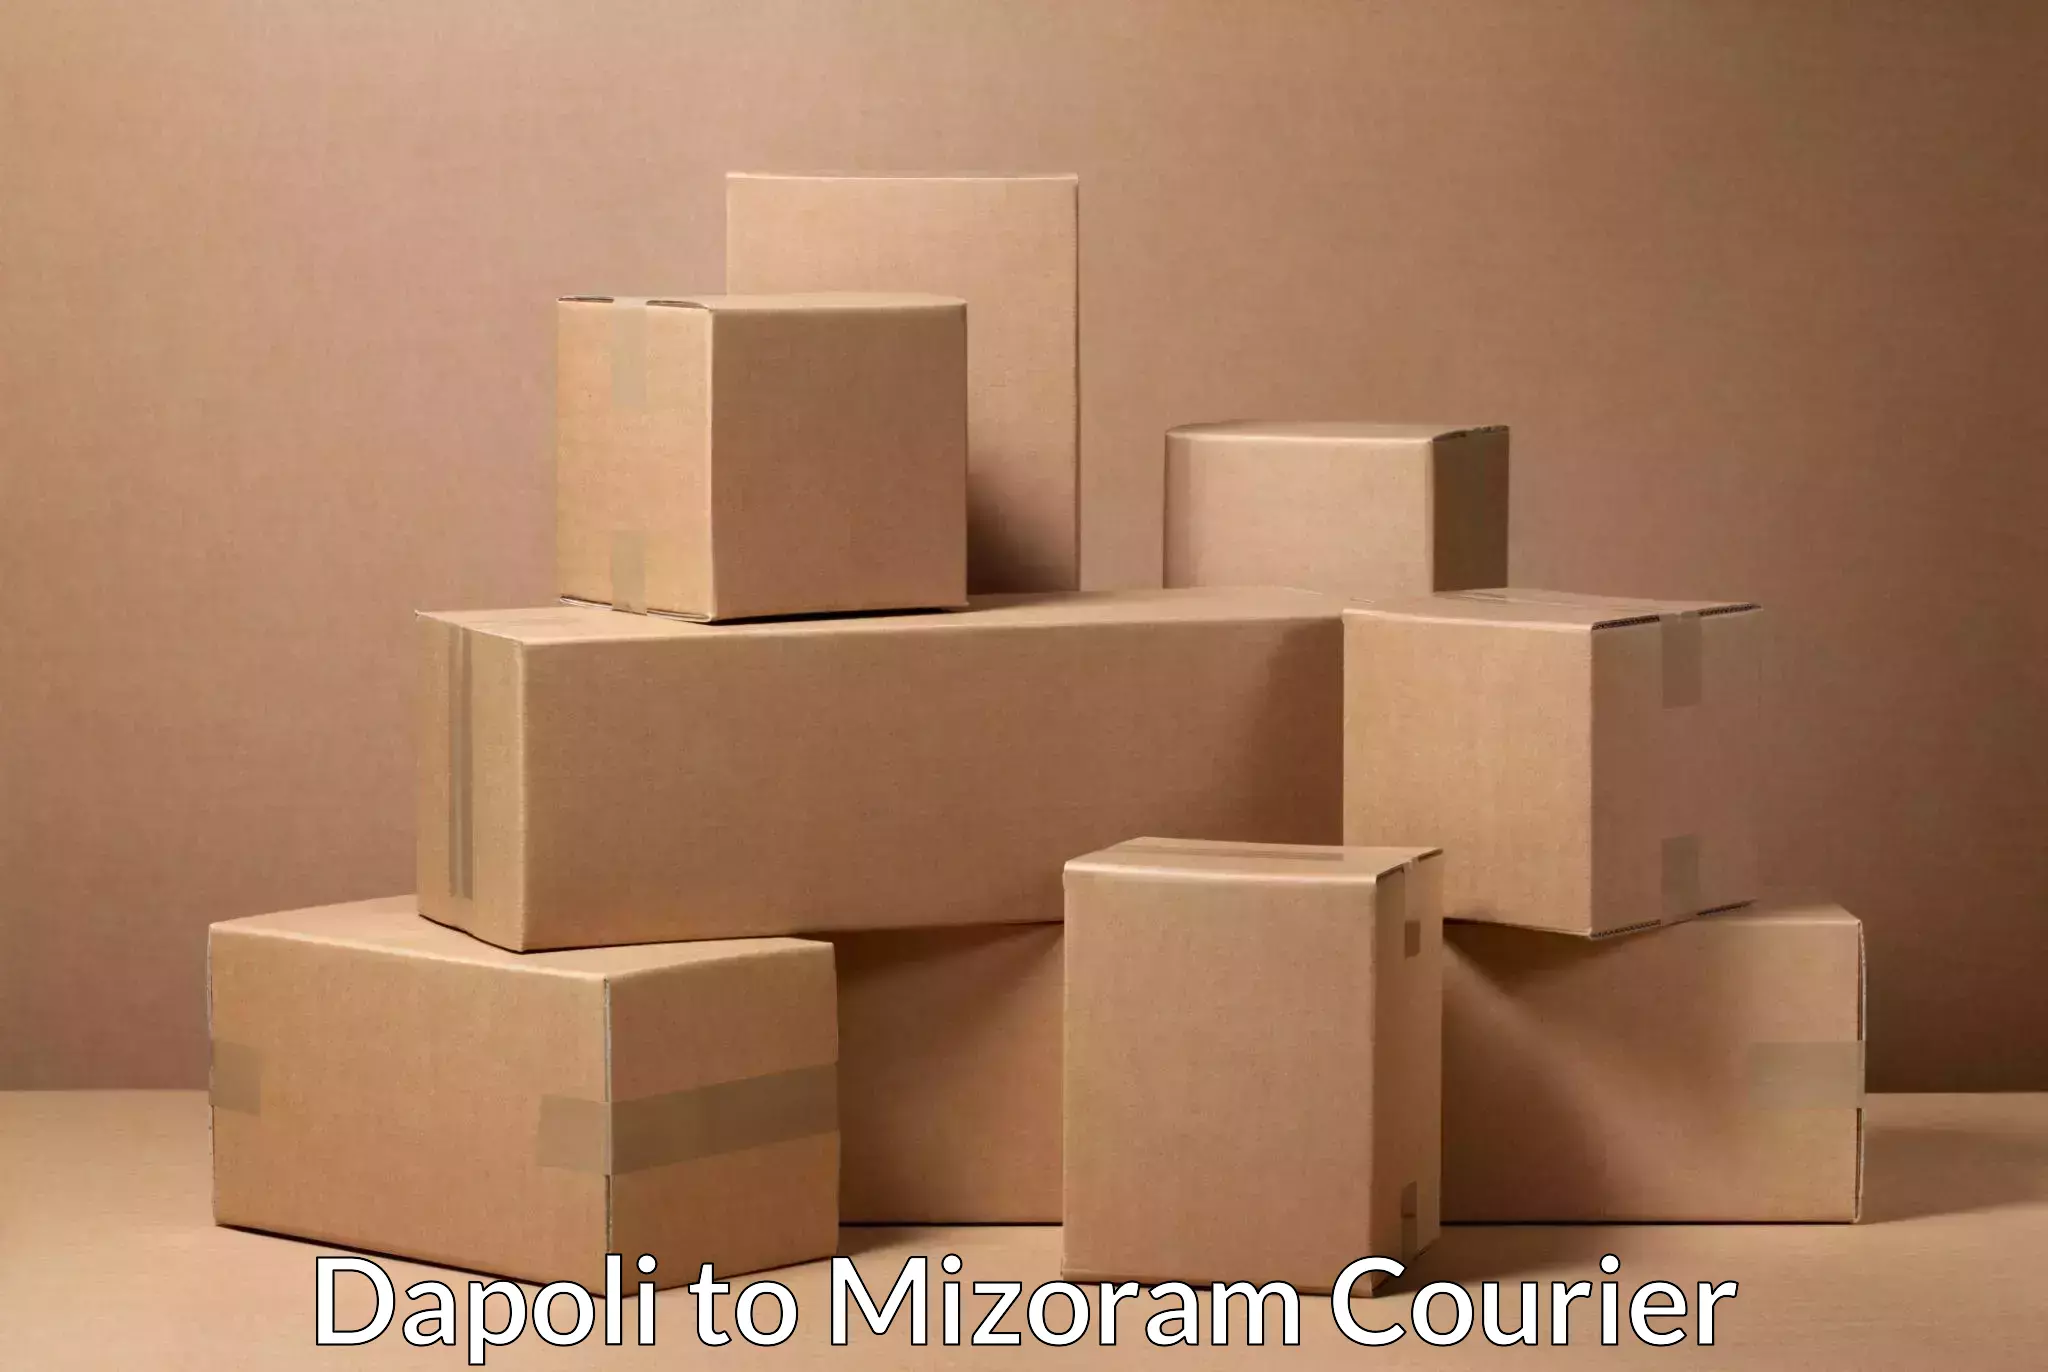 Efficient cargo services Dapoli to Saitual